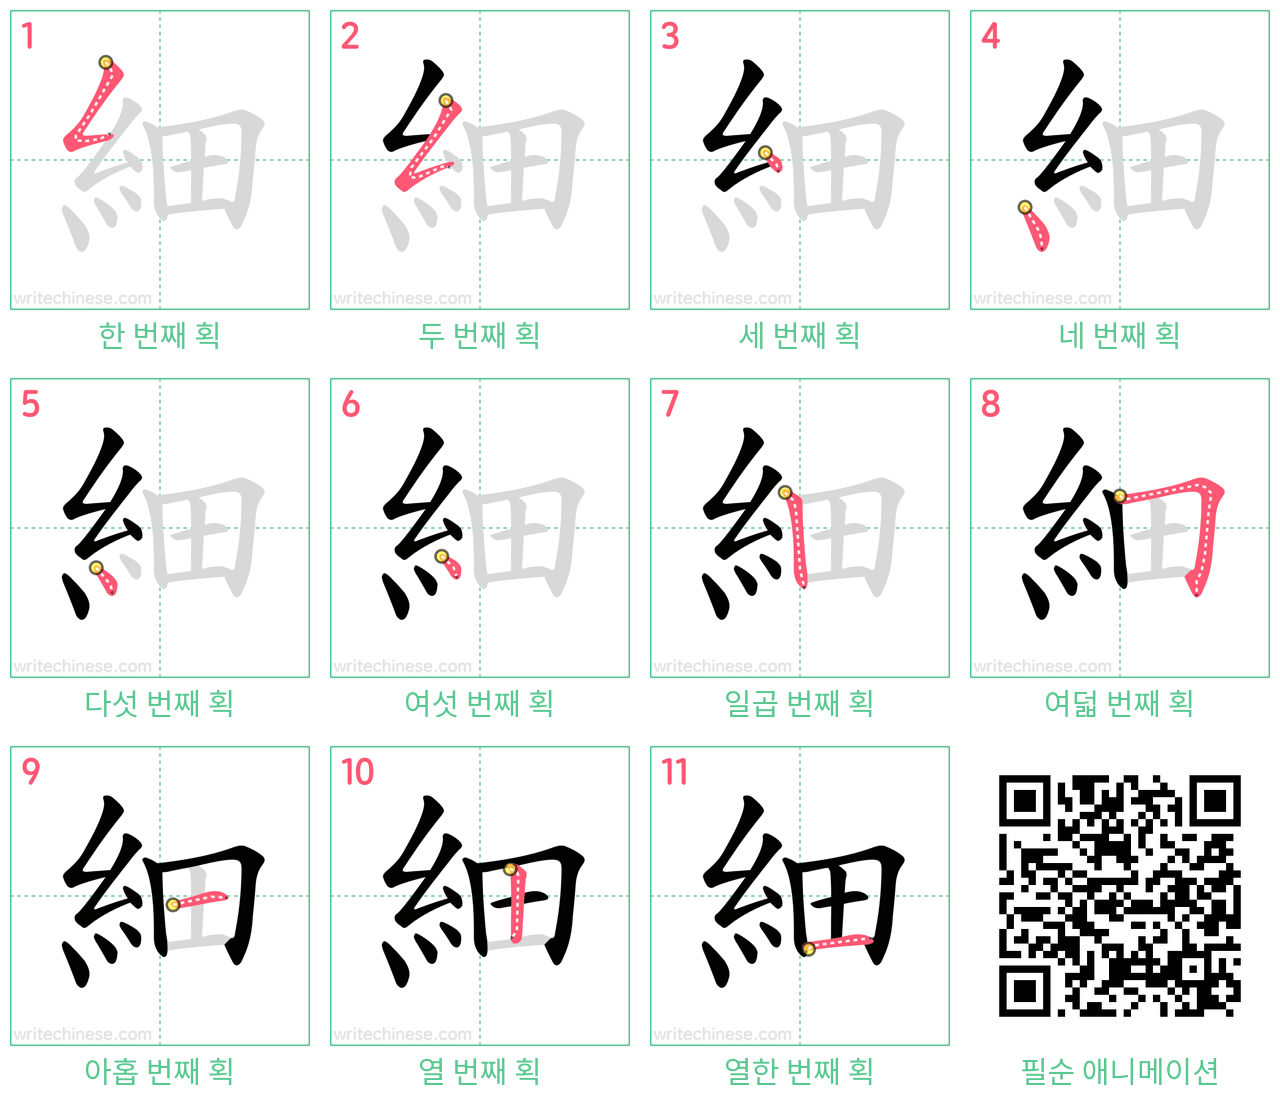 細 step-by-step stroke order diagrams